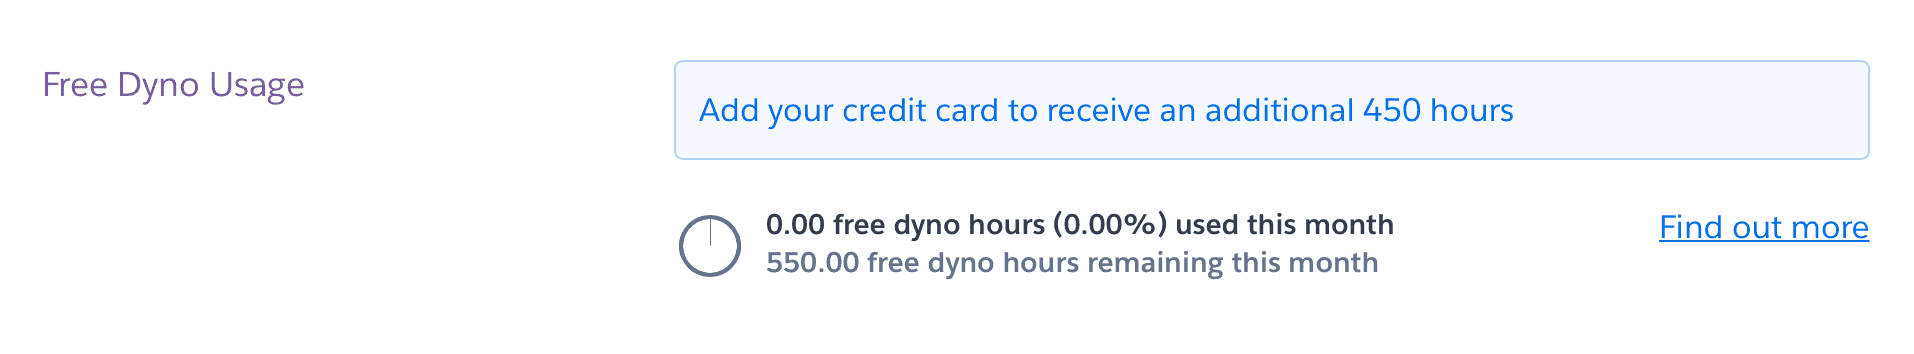 Screenshot of free dynos usage